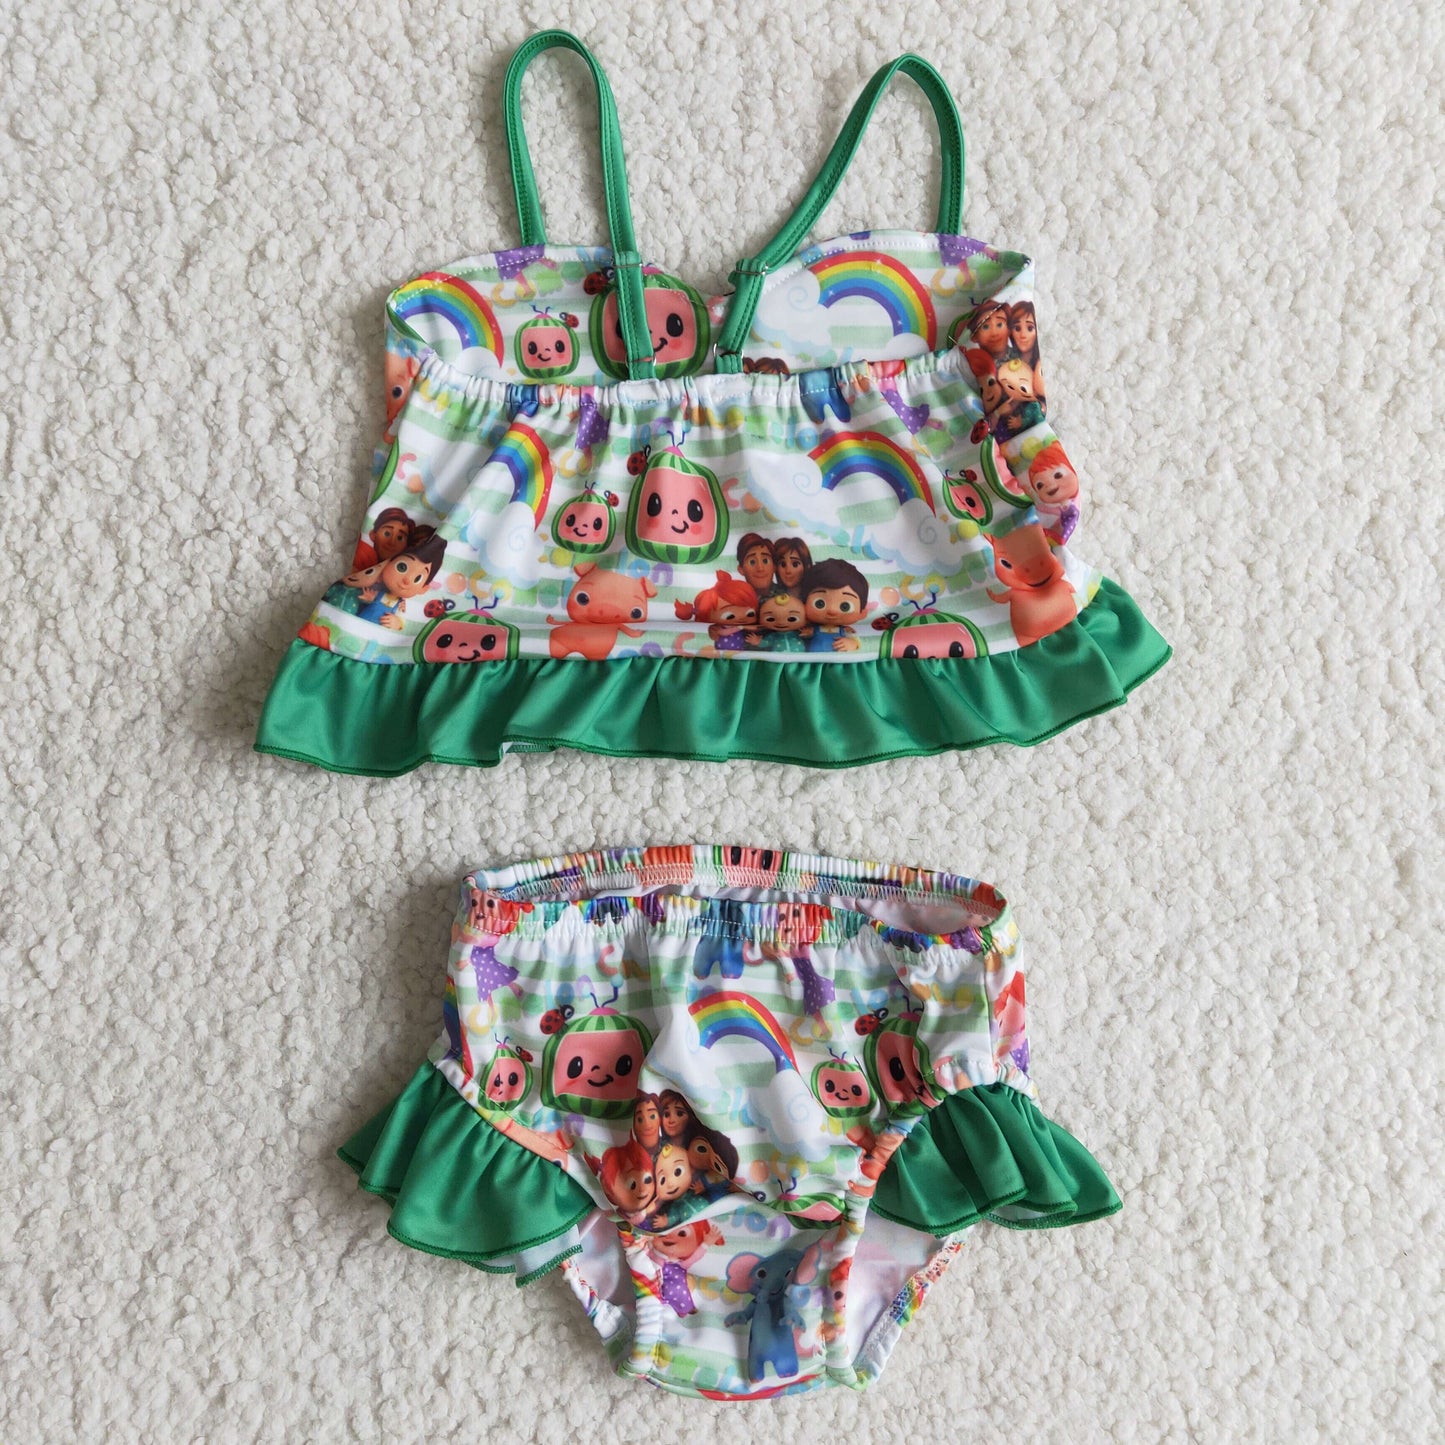 Green ruffle cute melon print toddler girls summer swimsuit